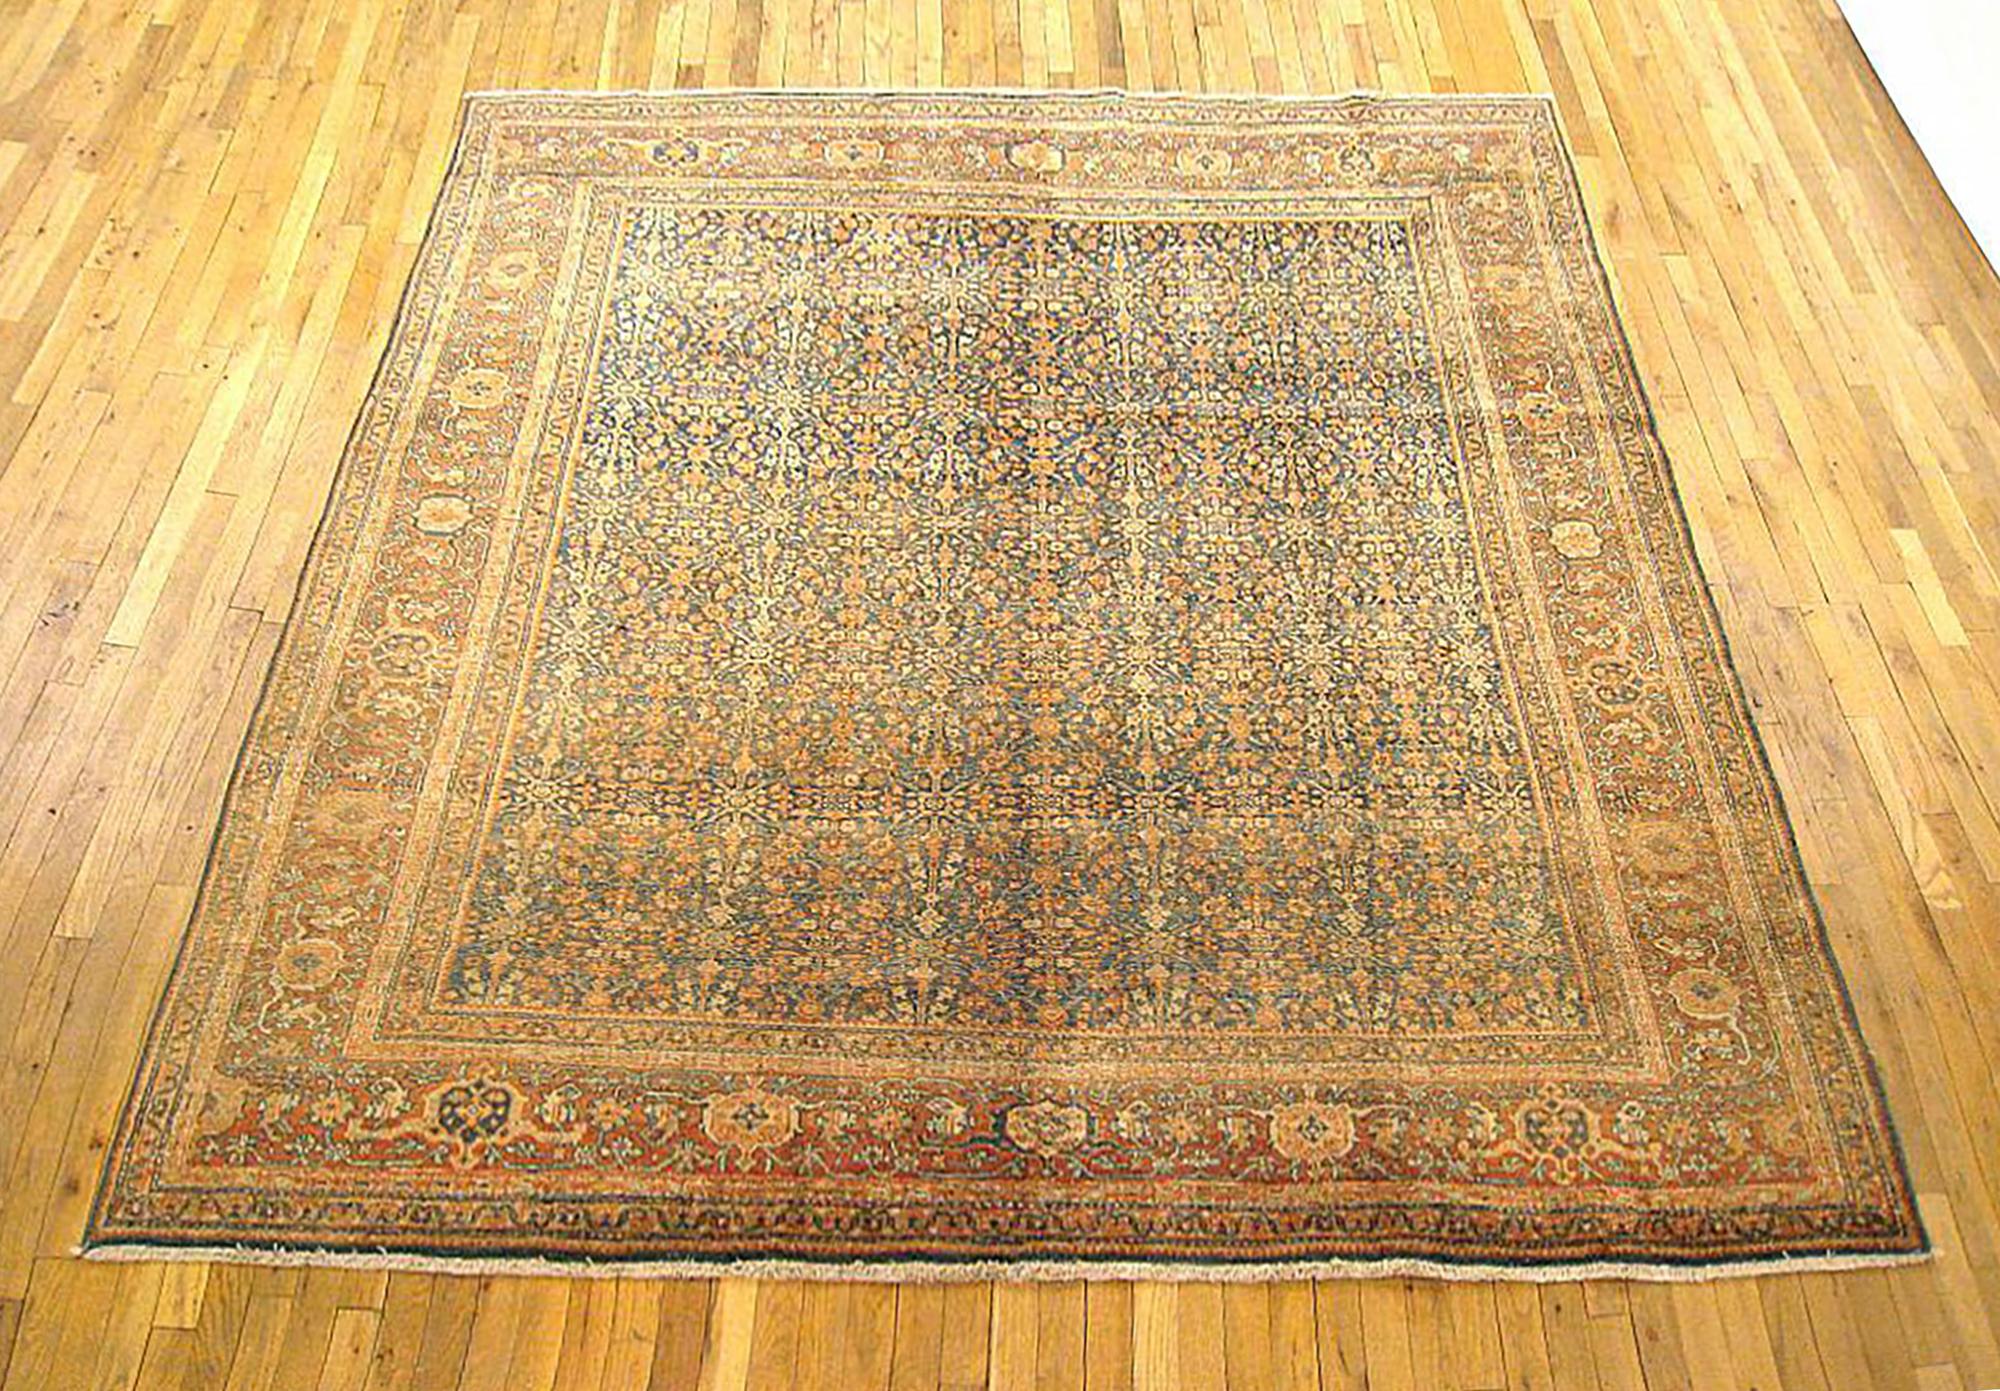 Antique Persian Tabriz  Oriental Carpet, circa 1920, Room Sized

An antique Persian Tabriz oriental carpet, circa 1920. Size: 8'3